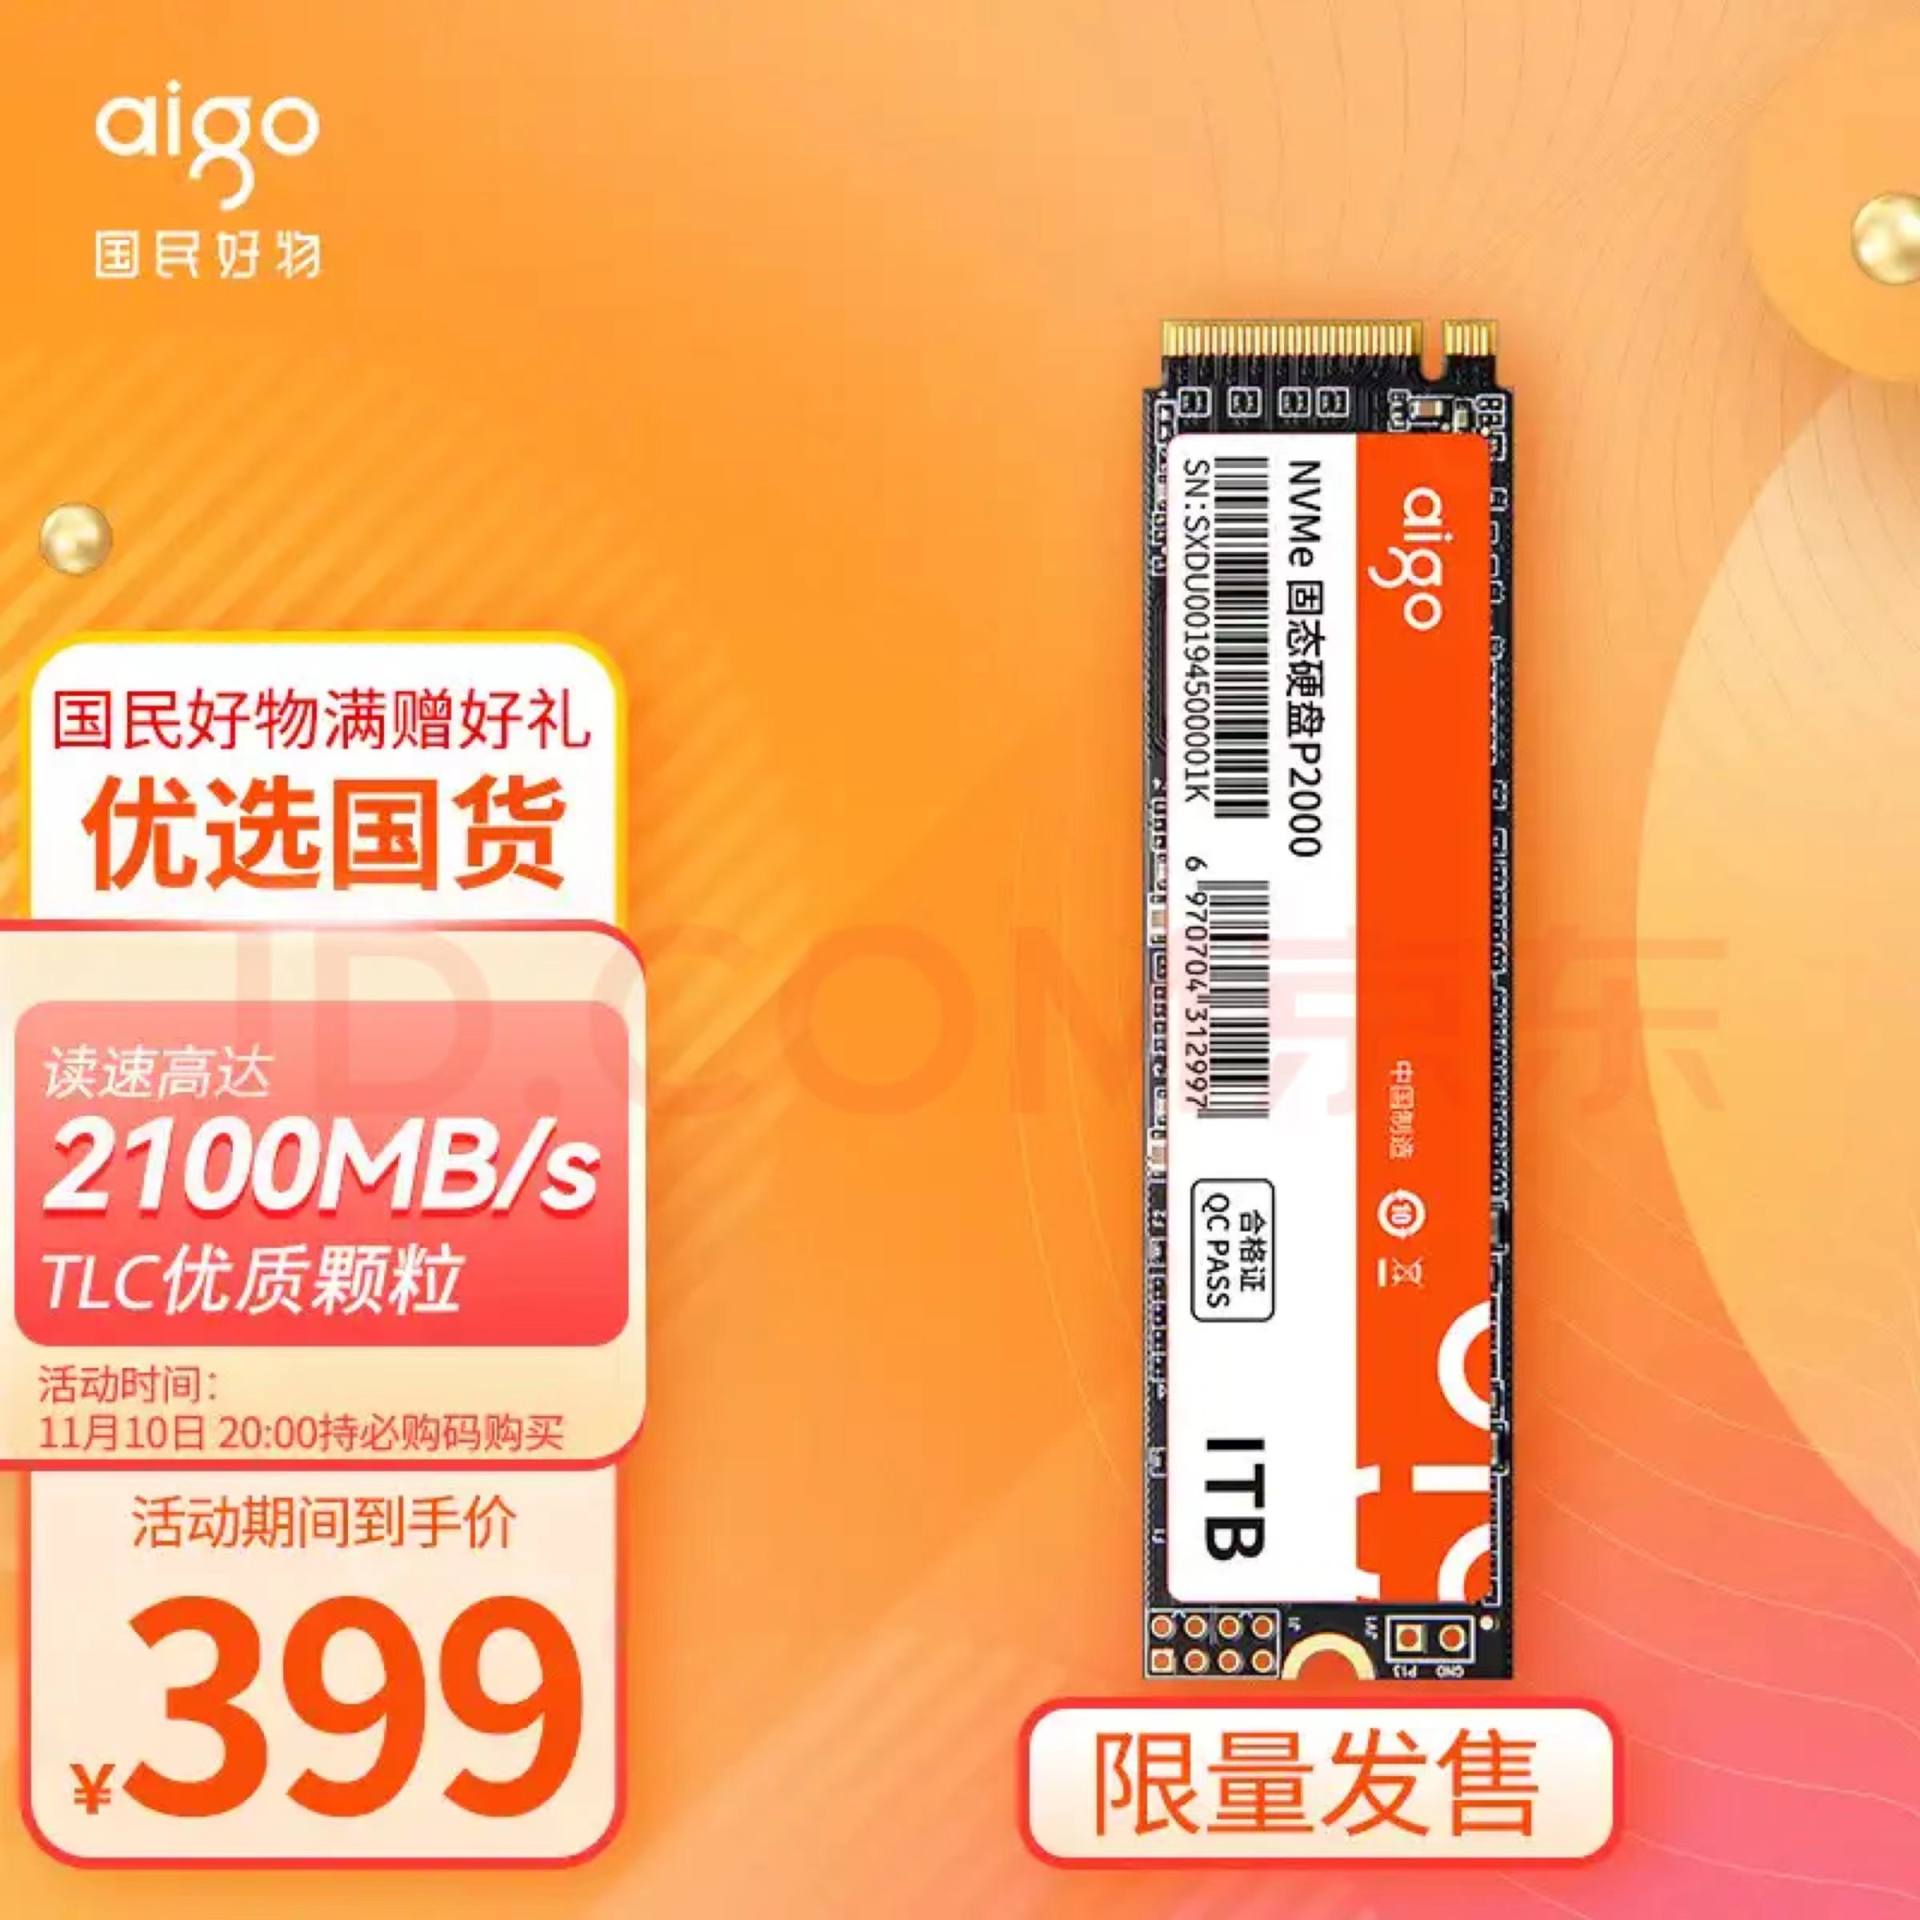 1TB固态硬盘双十一只售399元，aigo这是疯了吗？